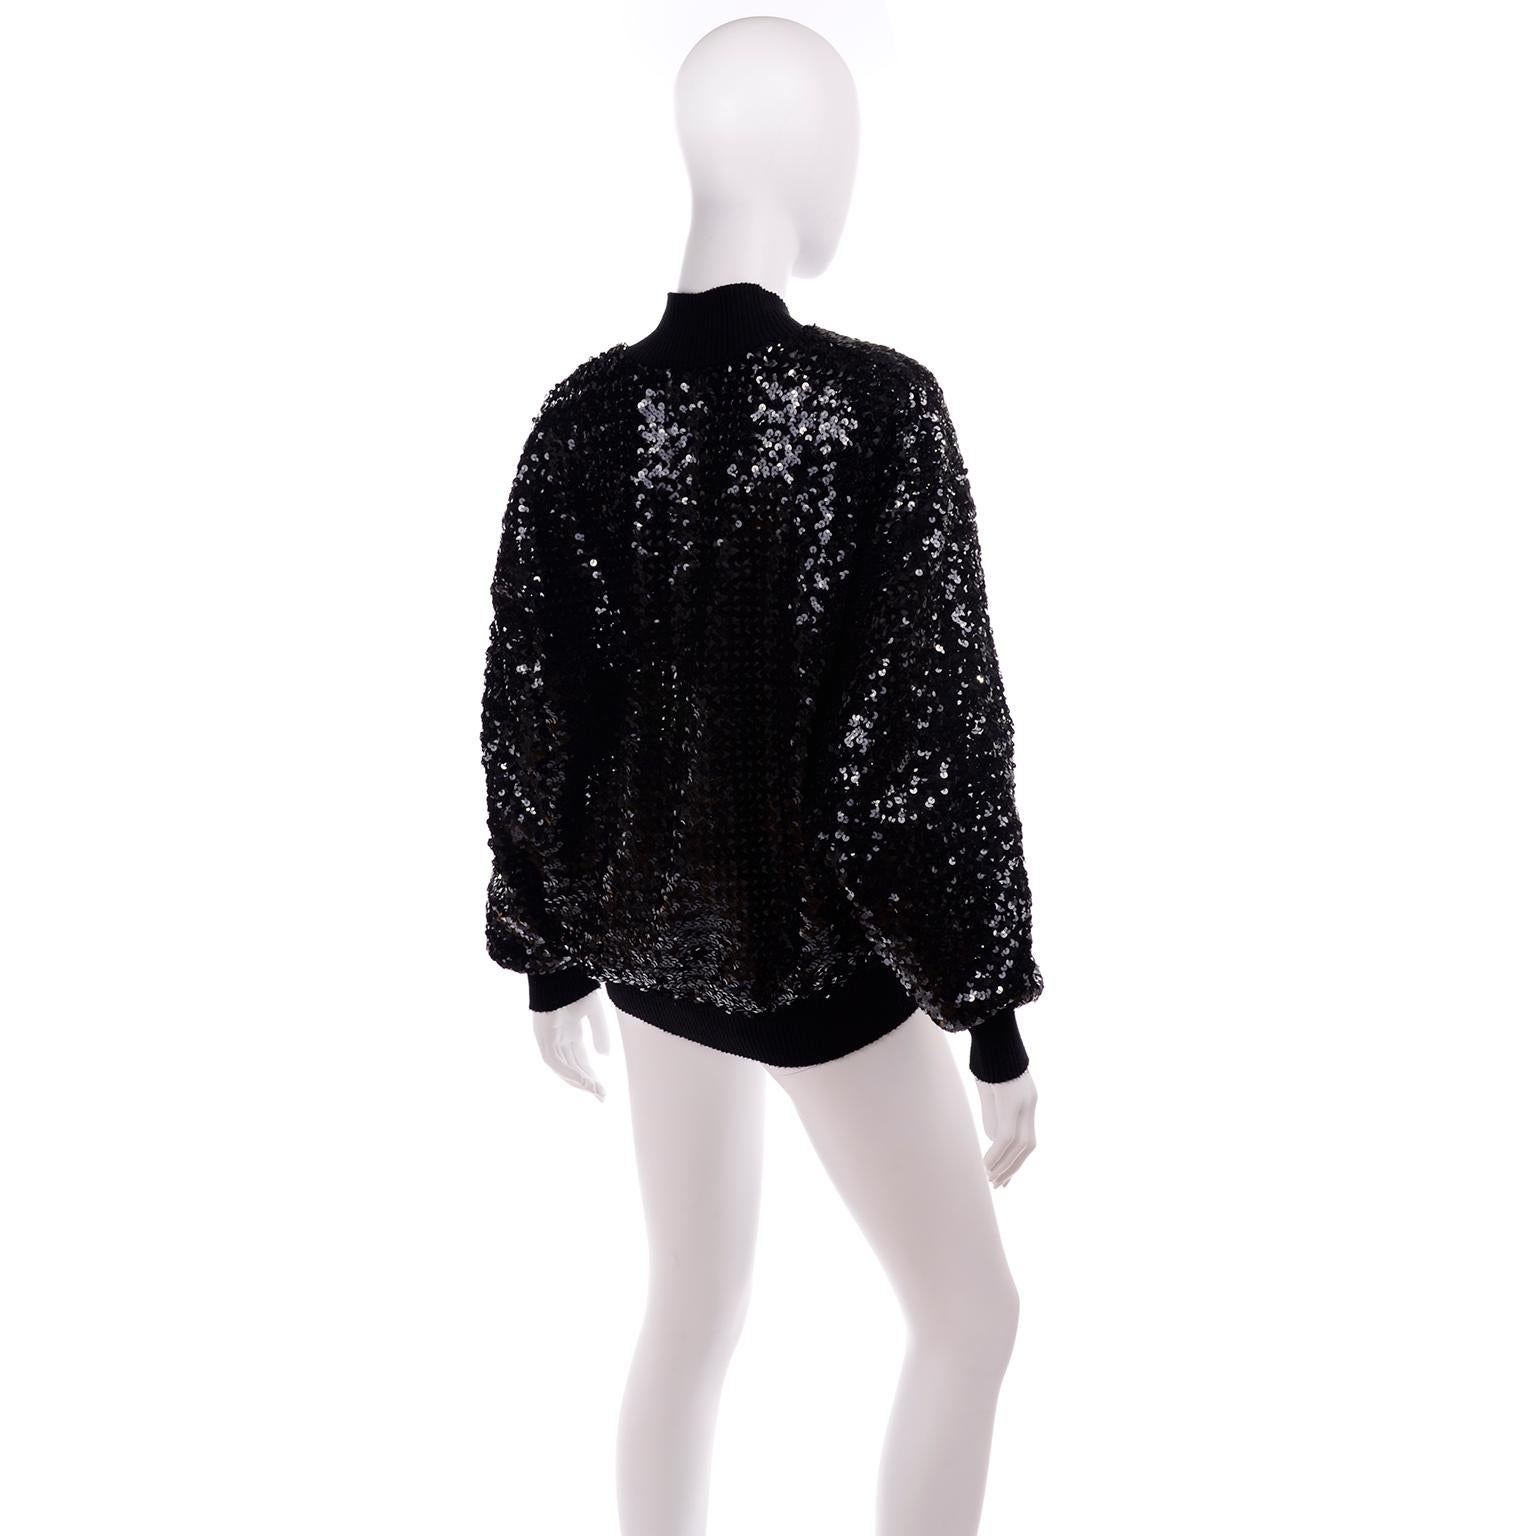 Women's 1980s Caron Vintage Black Sequin Zip Front Sweatshirt Style Jacket Top